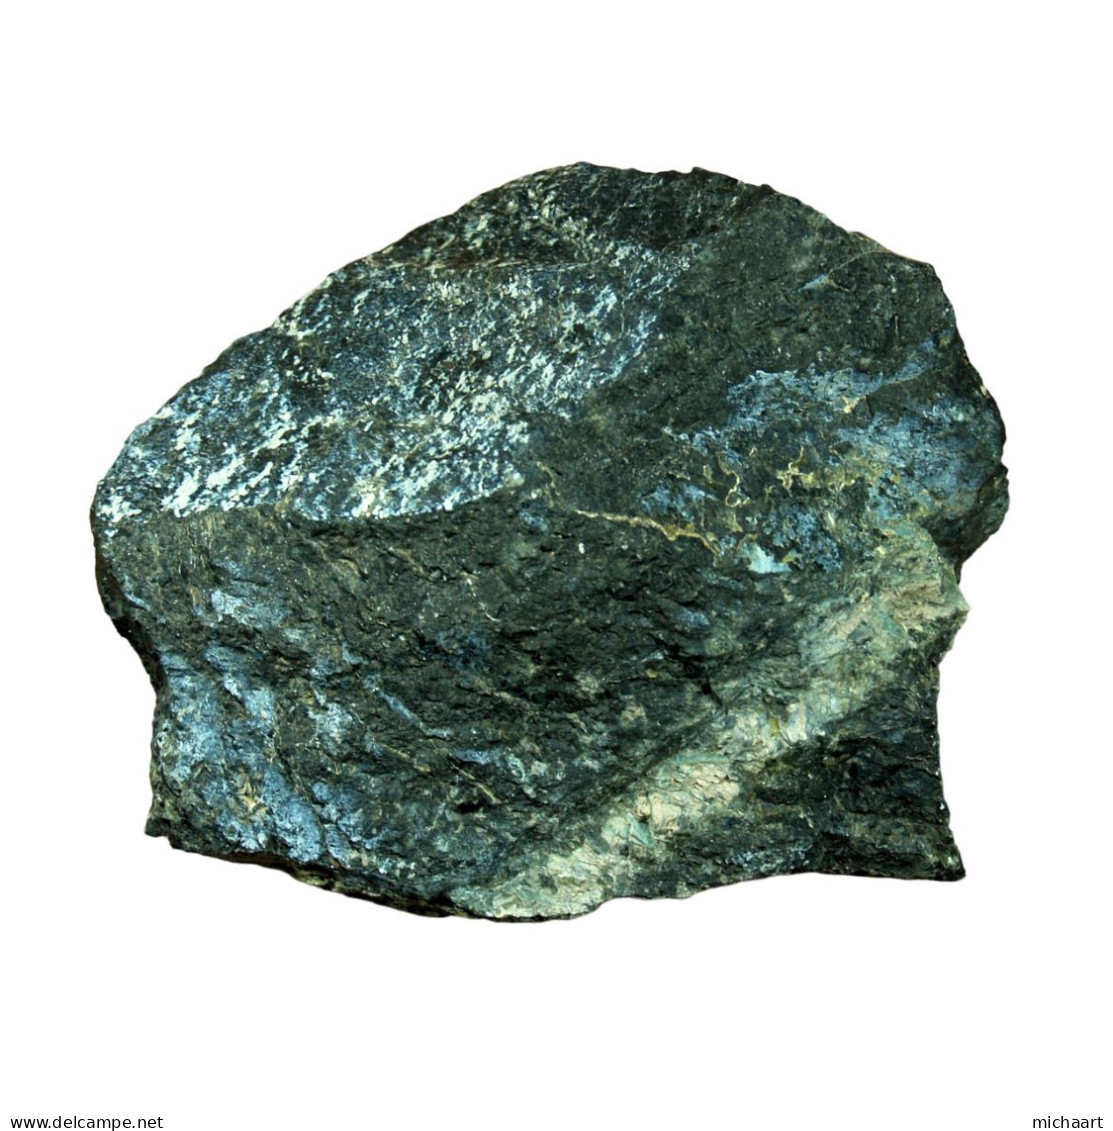 Wehrlite Mineral Rock Specimen 1284g - 45 Oz Cyprus Troodos Ophiolite 04405 - Minerals